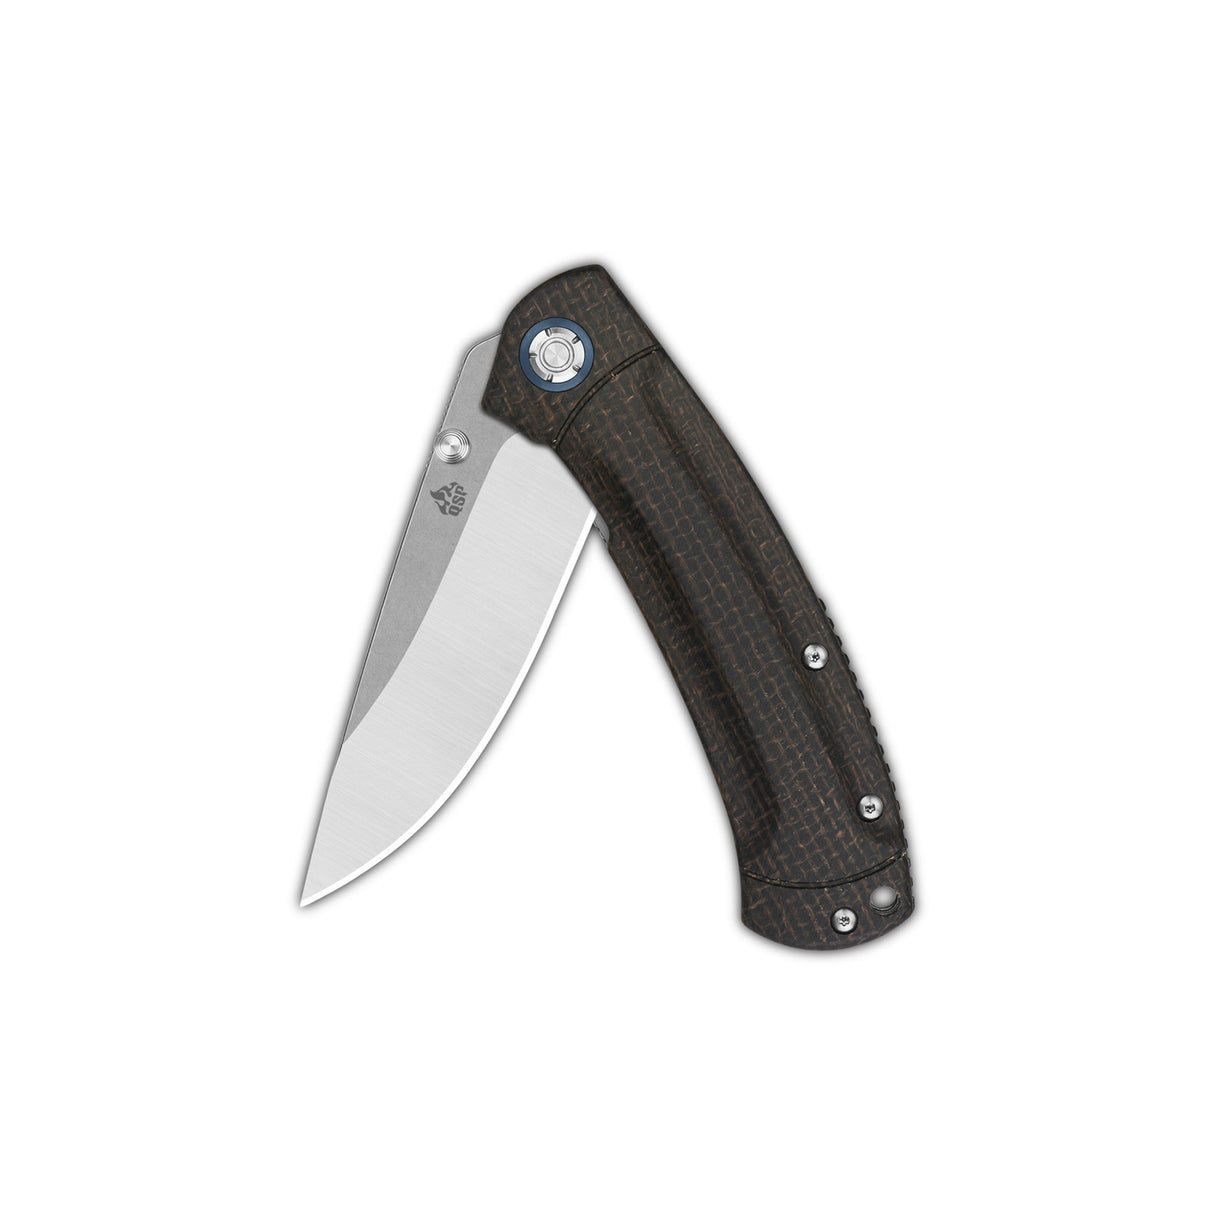 QSP Copperhead Liner Lock Pocket Knife Sandvik 14C28N Blade Dark Brown Micarta Handle